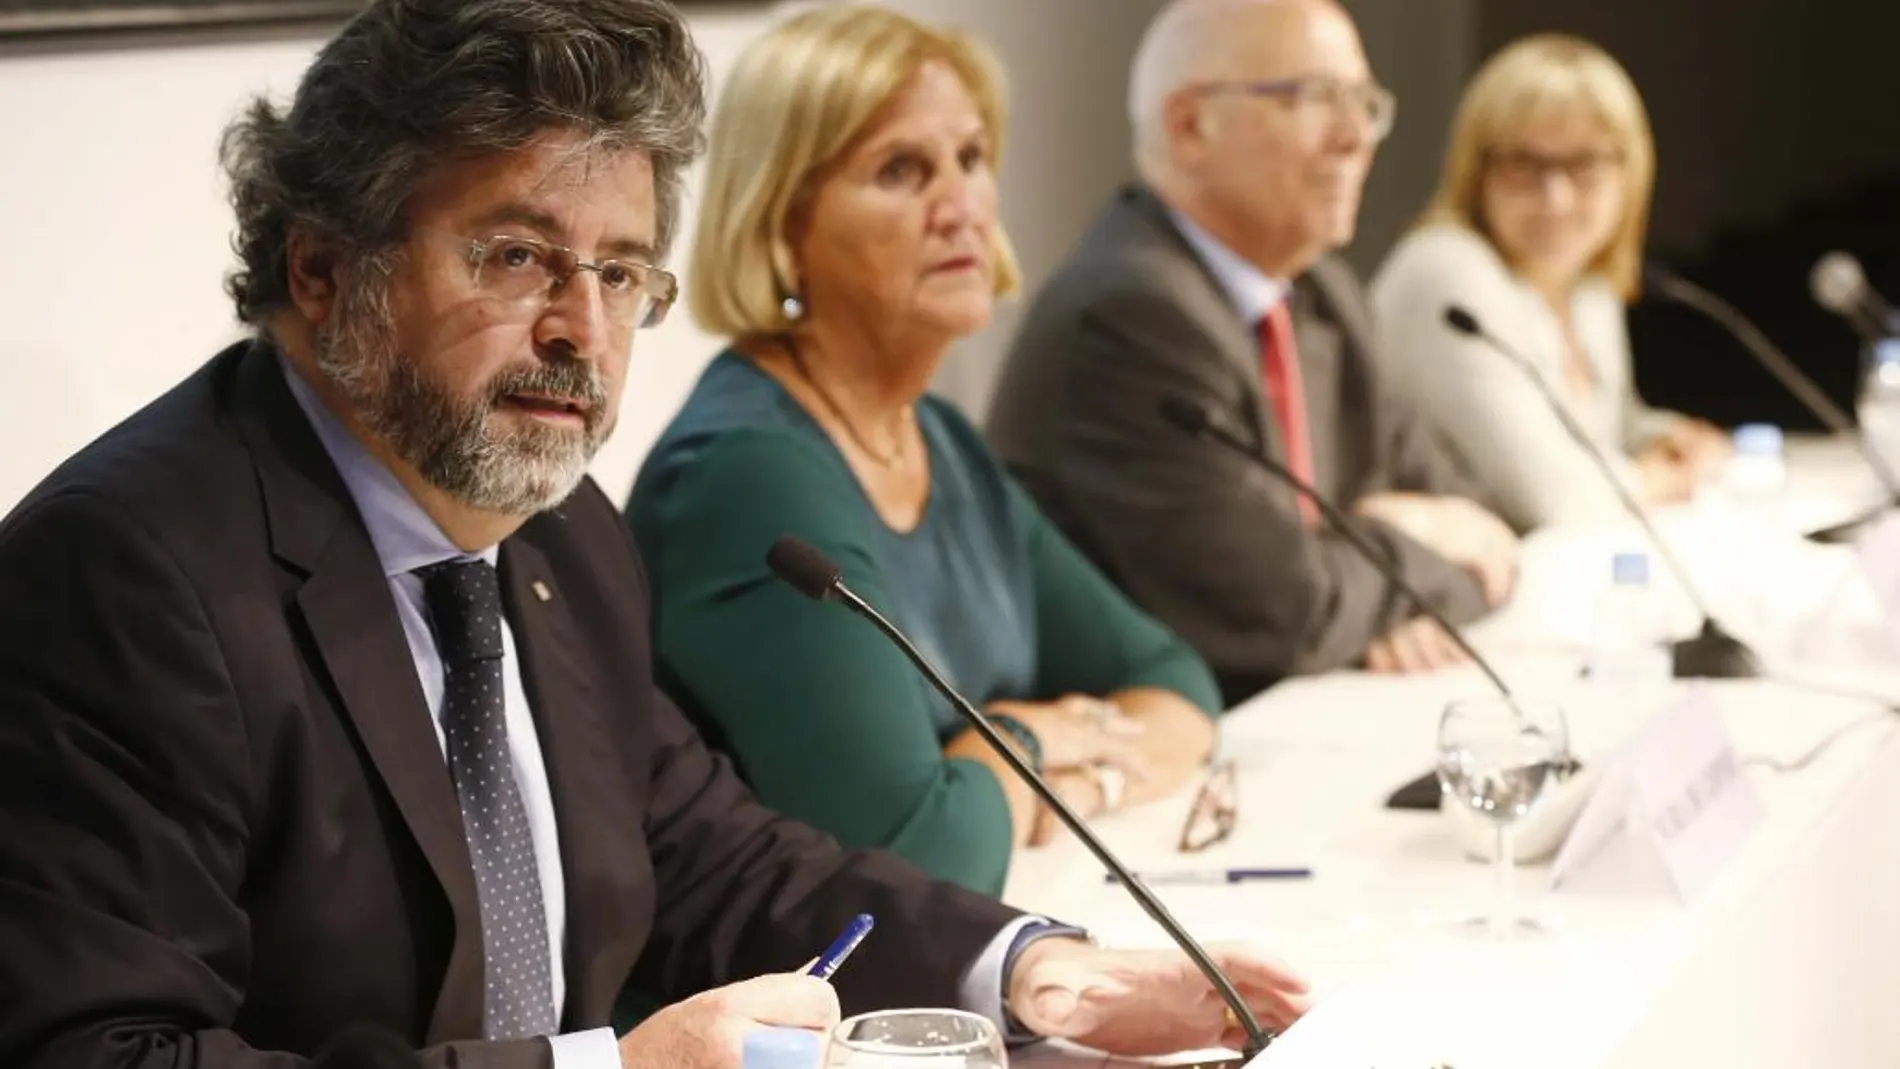 Los críticos de Unió Antoni Castellà, Núria de Gispert, Joan Rigol y Mercè Jou, partidarios de la lista independentista de Artur Mas